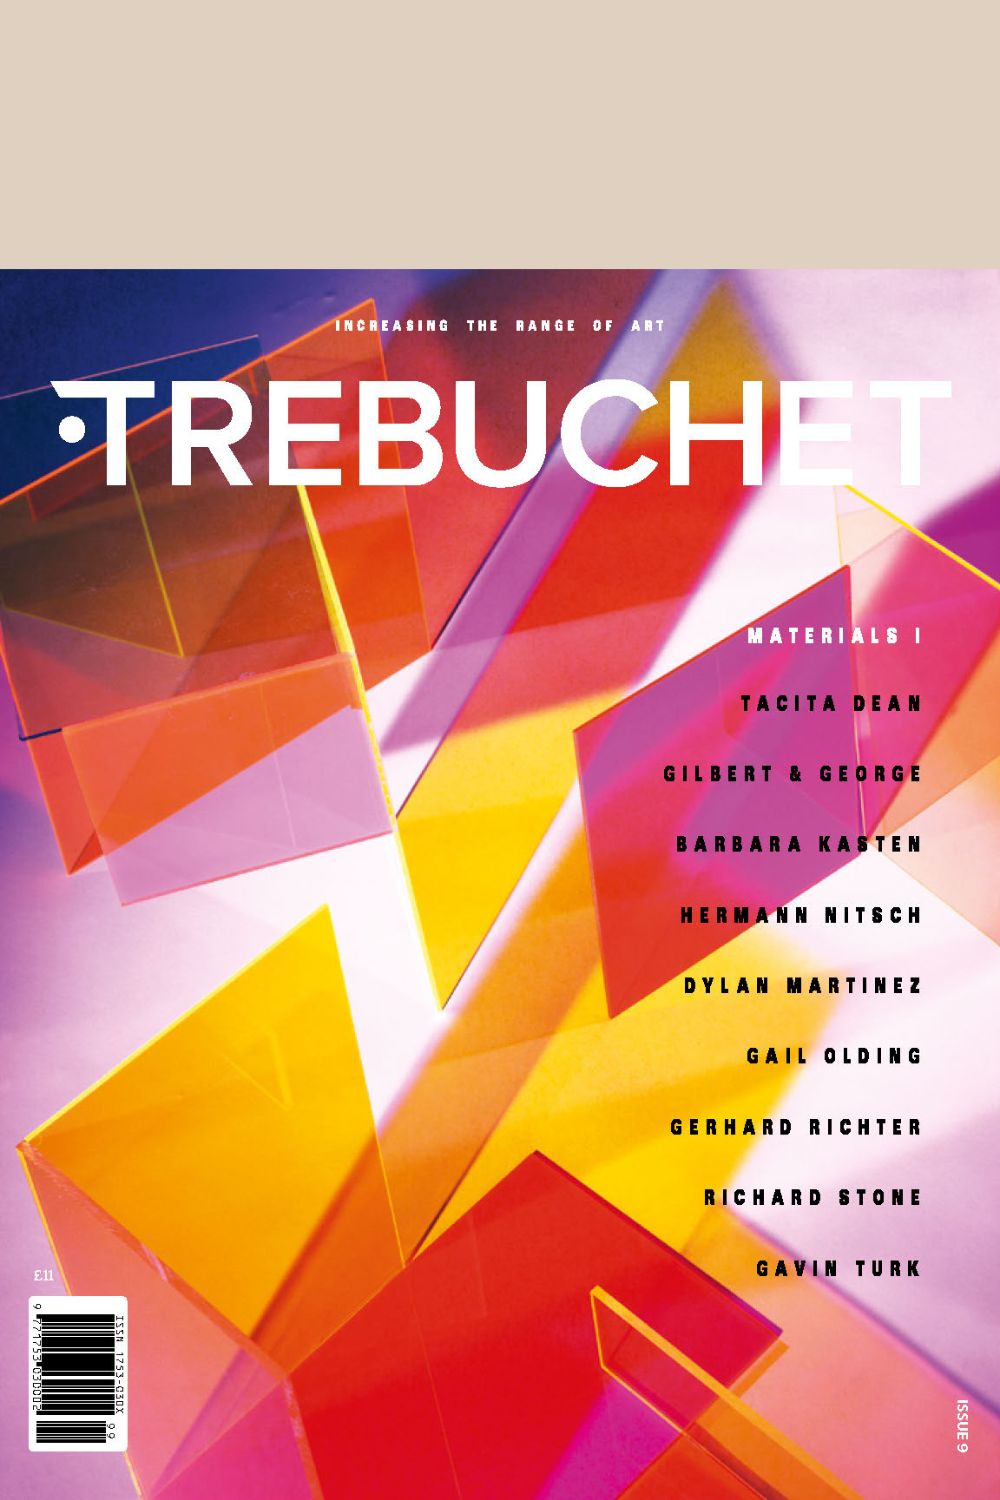 Trebuchet Magazine Issue 9 Materials I cover